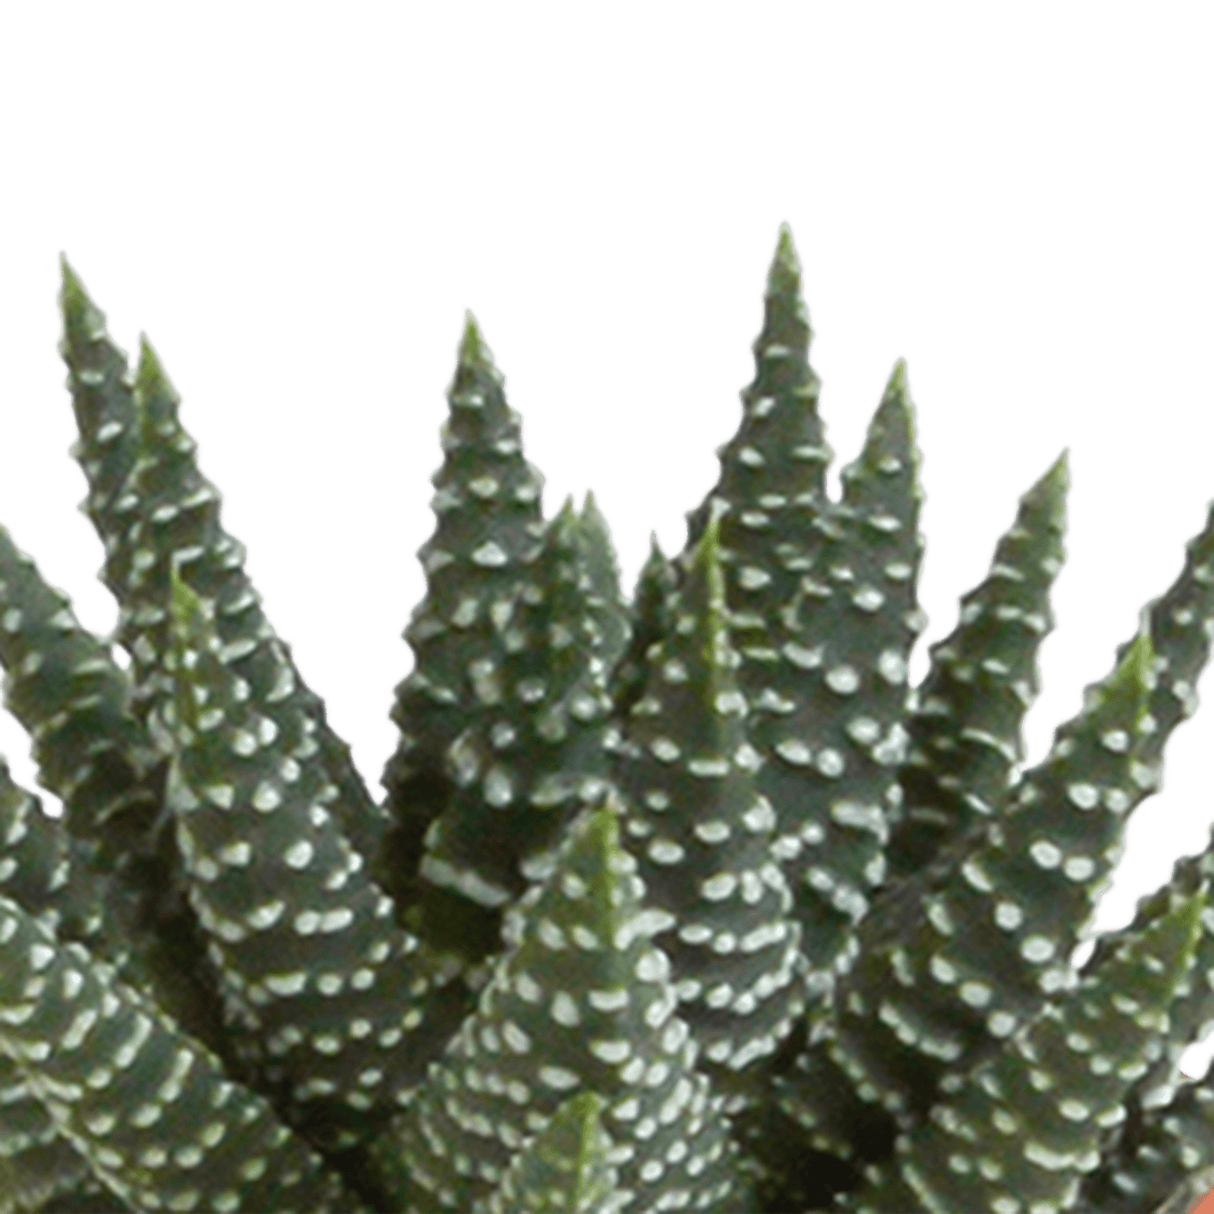 Coffret cactus, succulentes - Lot de 15 plantes, h13cm